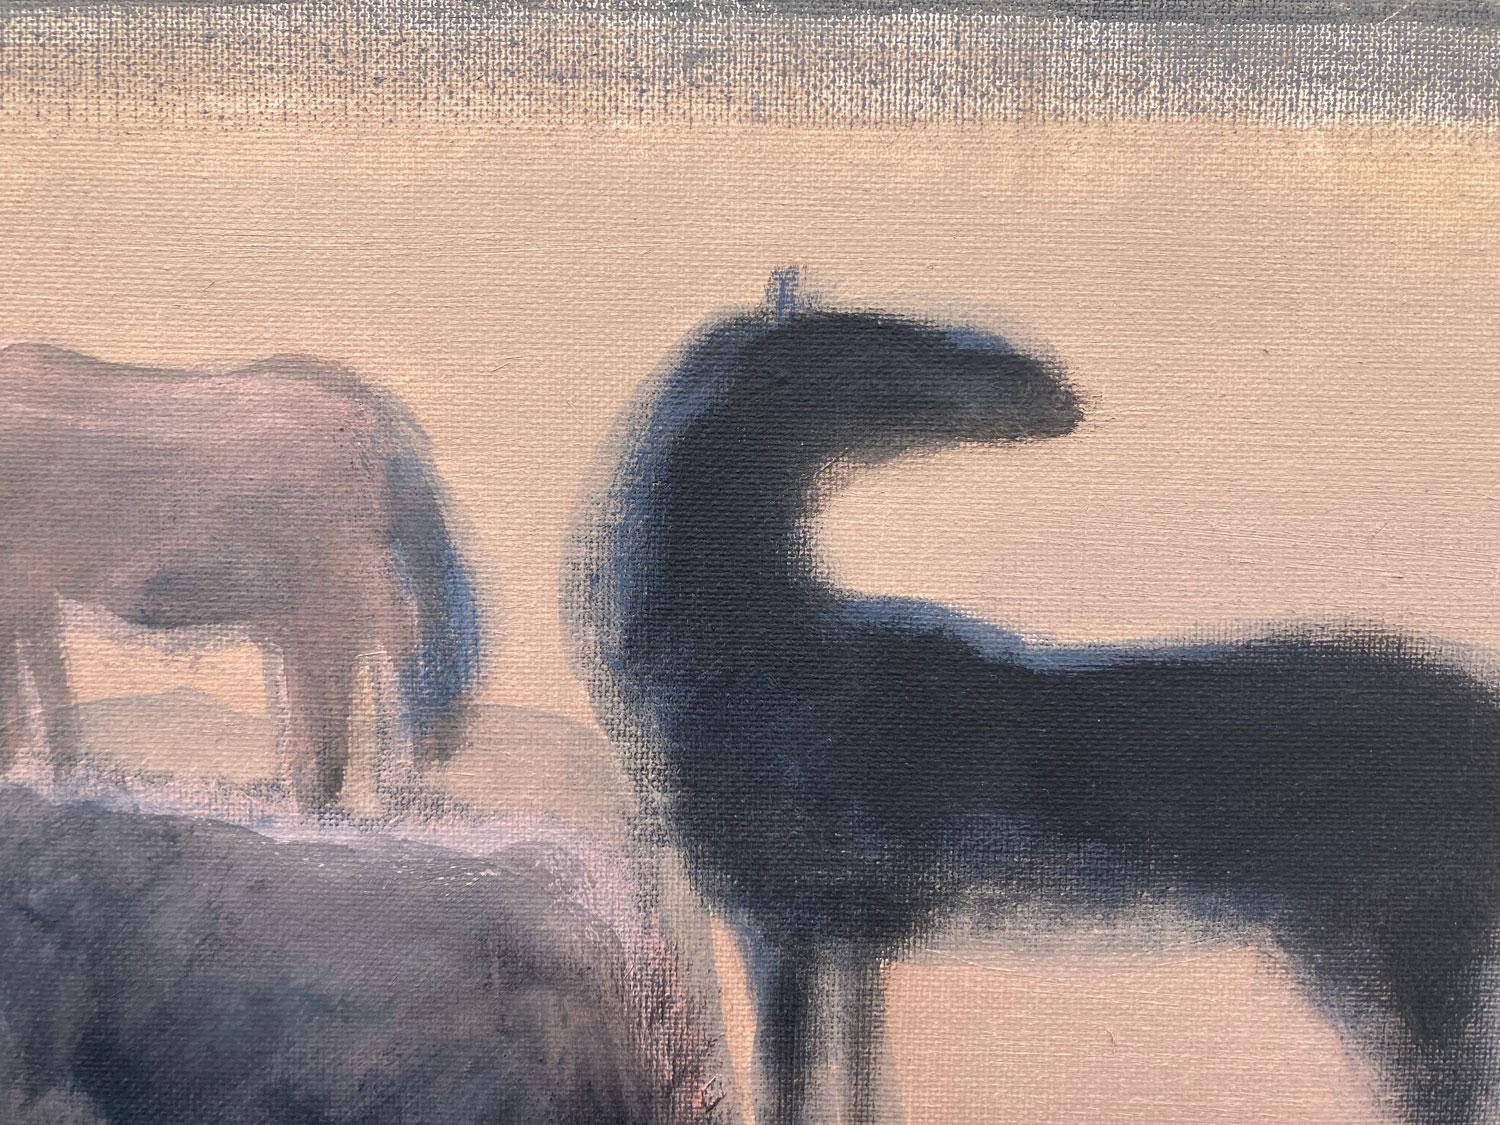 <p>Kommentare des Künstlers<br>Der Künstler Nick Bontorno zeigt vier Pferde, die auf einer weiten Wiese grasen. Der gedämpfte Hintergrund lenkt den Blick auf die anthrazitfarbenen Motive. Nick setzt auf charmante Weise die Grundlagen des